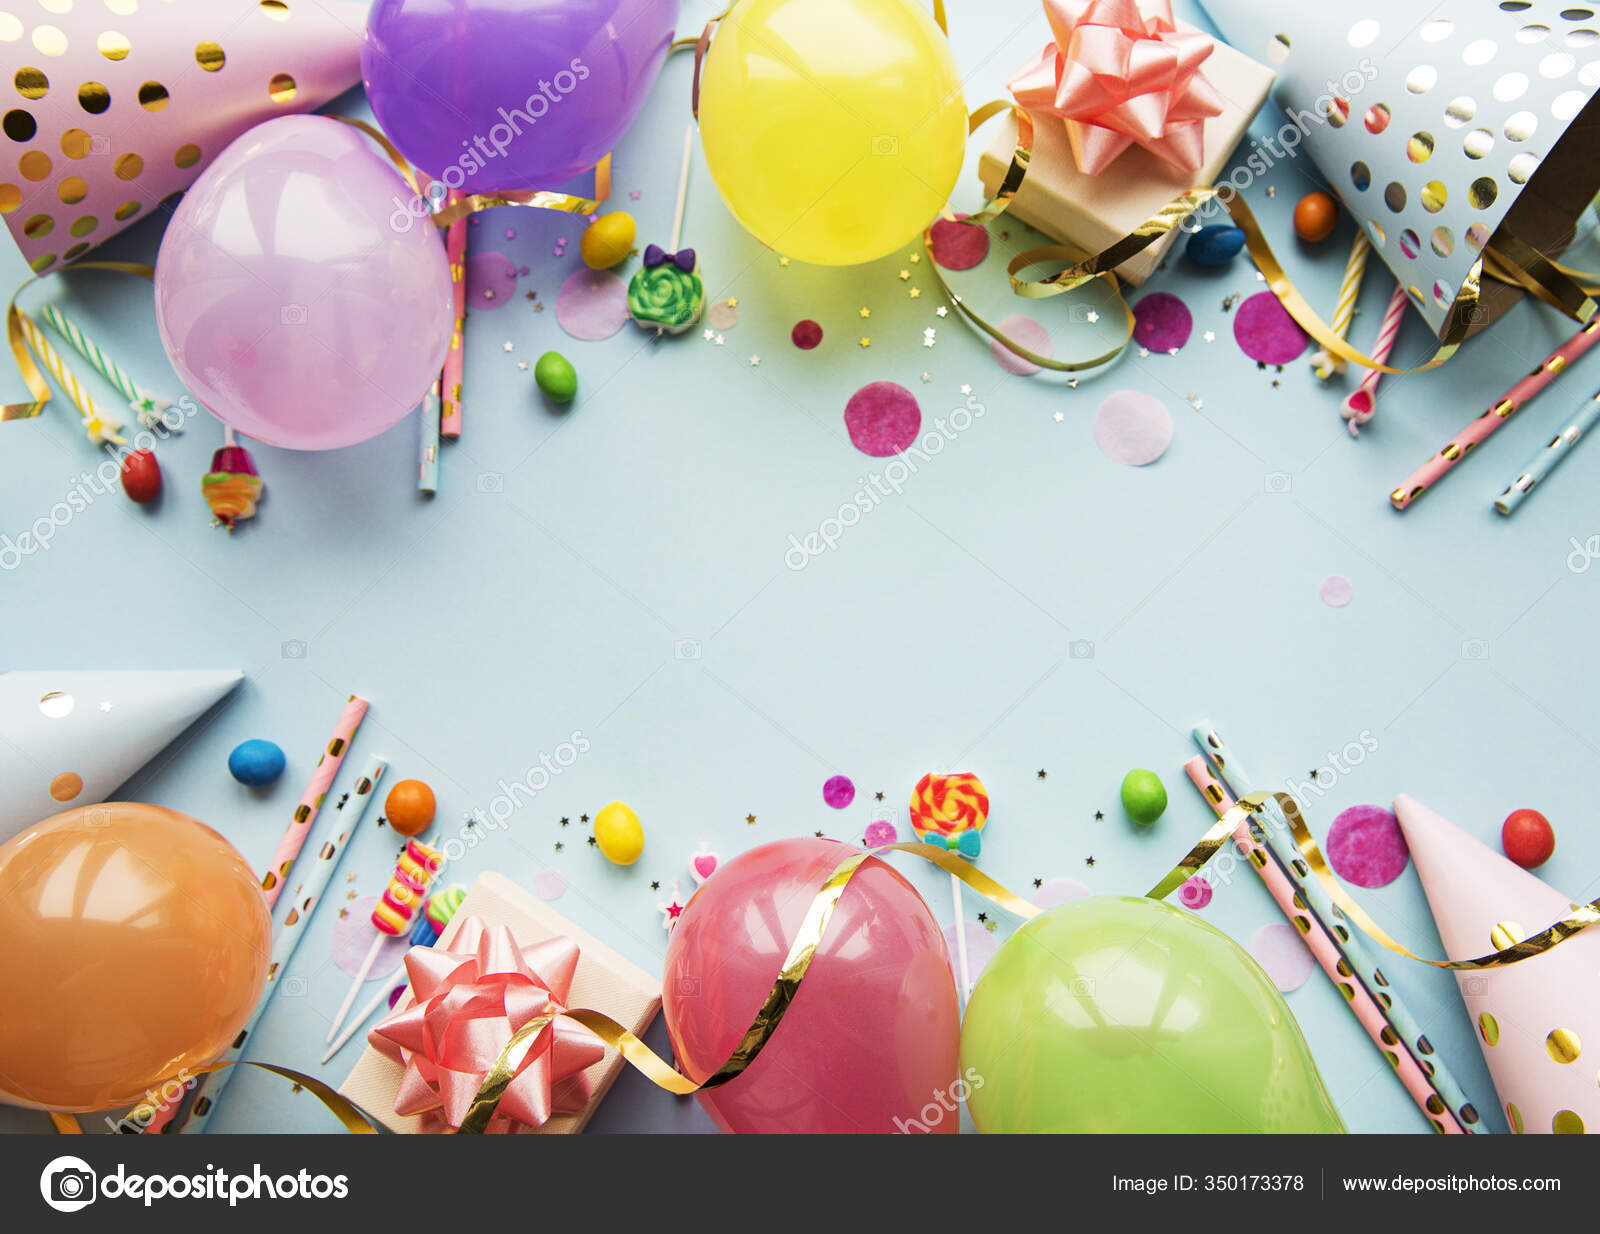 Ballons confettis - Espace fete